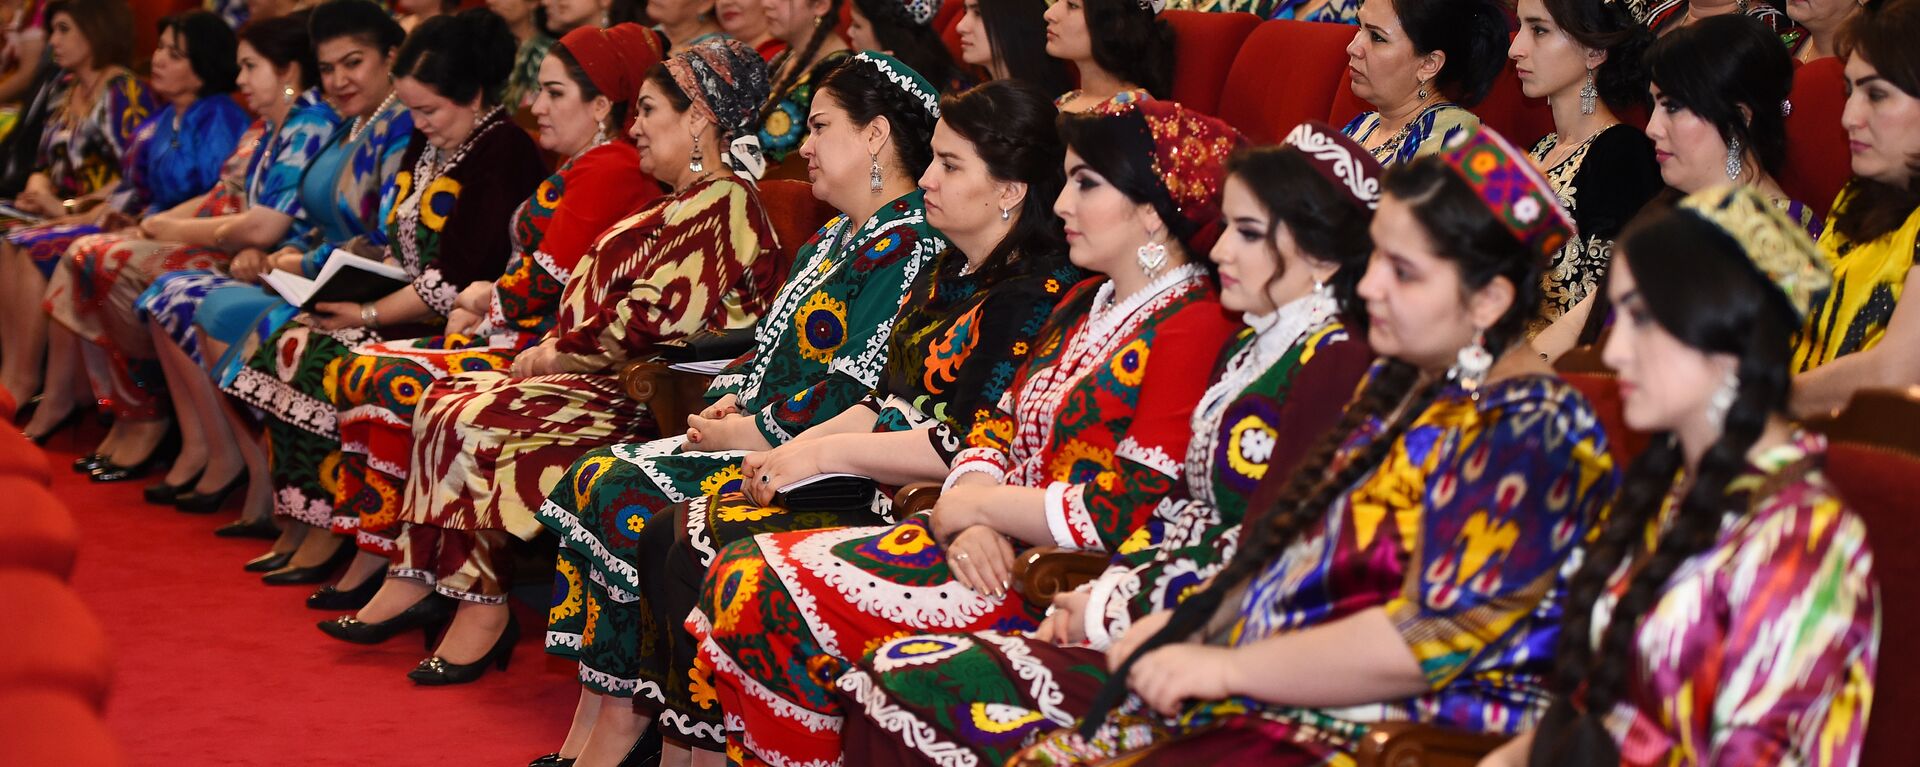 Женщины Таджикистана, архивное фото - Sputnik Тоҷикистон, 1920, 08.11.2017